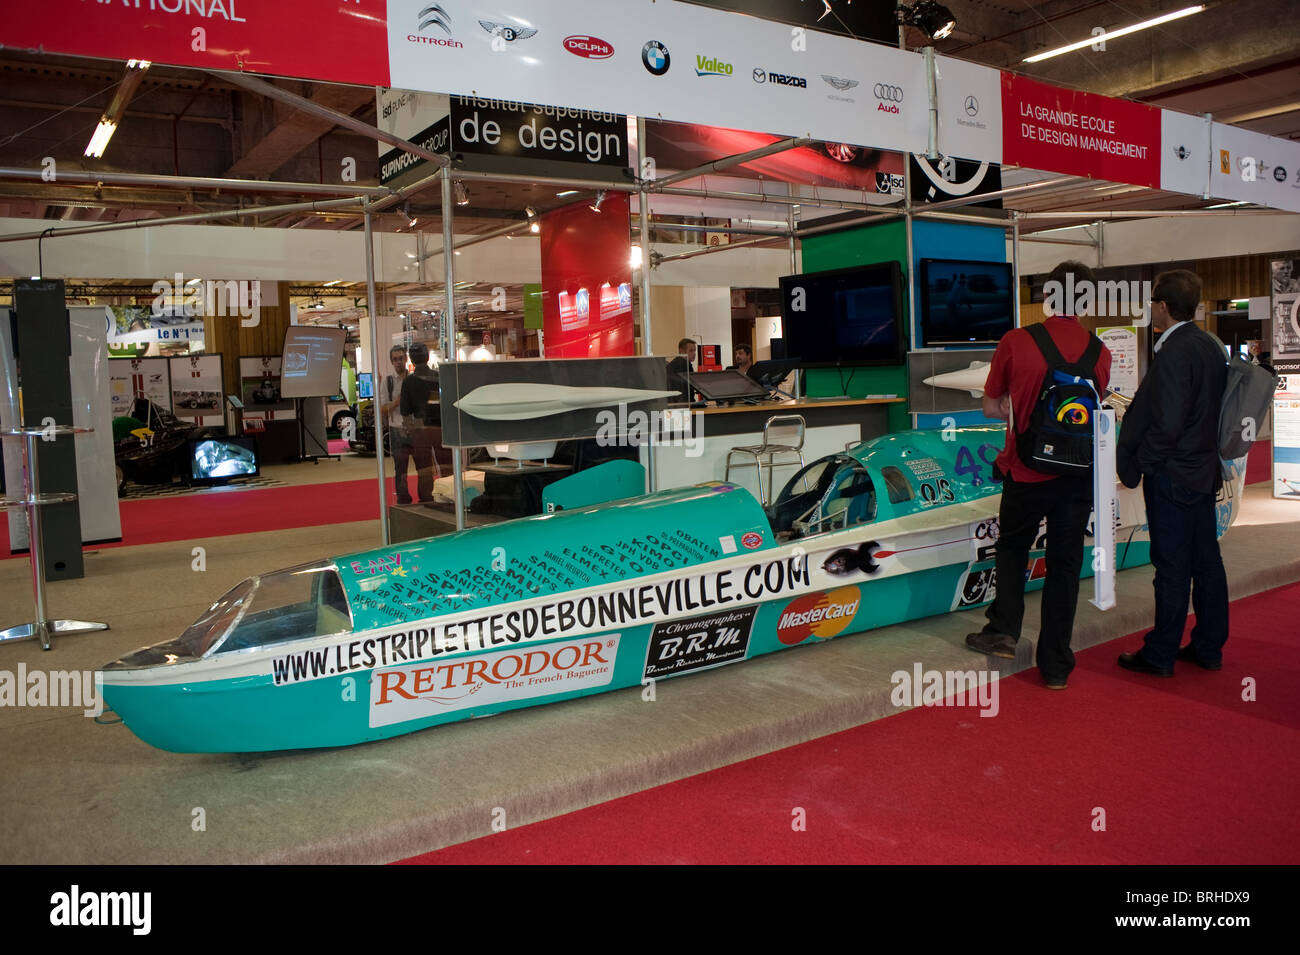 Paris, France, Paris Car Show, World's Fastest Compressed Air Concept Car, 'Institute Superieur de Design University', Green tech Stock Photo